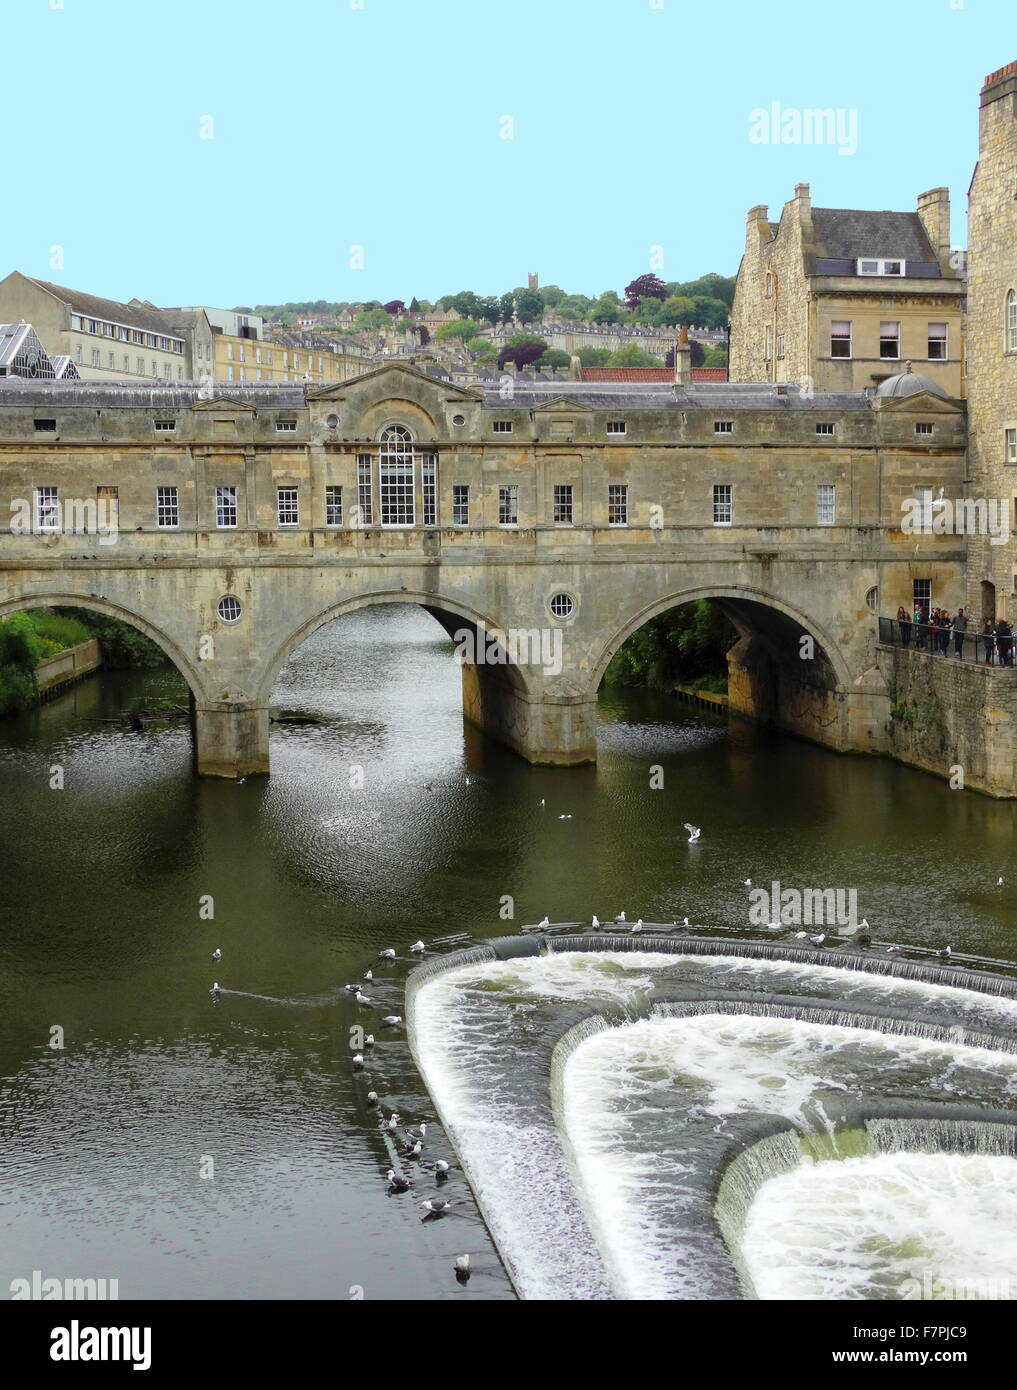 Pulteney Bridge sul fiume Avon a Bath, Inghilterra. completato da 1774. Progettato da Robert Adam in stile palladiano, è eccezionale in avente negozi costruiti in tutta la sua piena span su entrambi i lati. Foto Stock